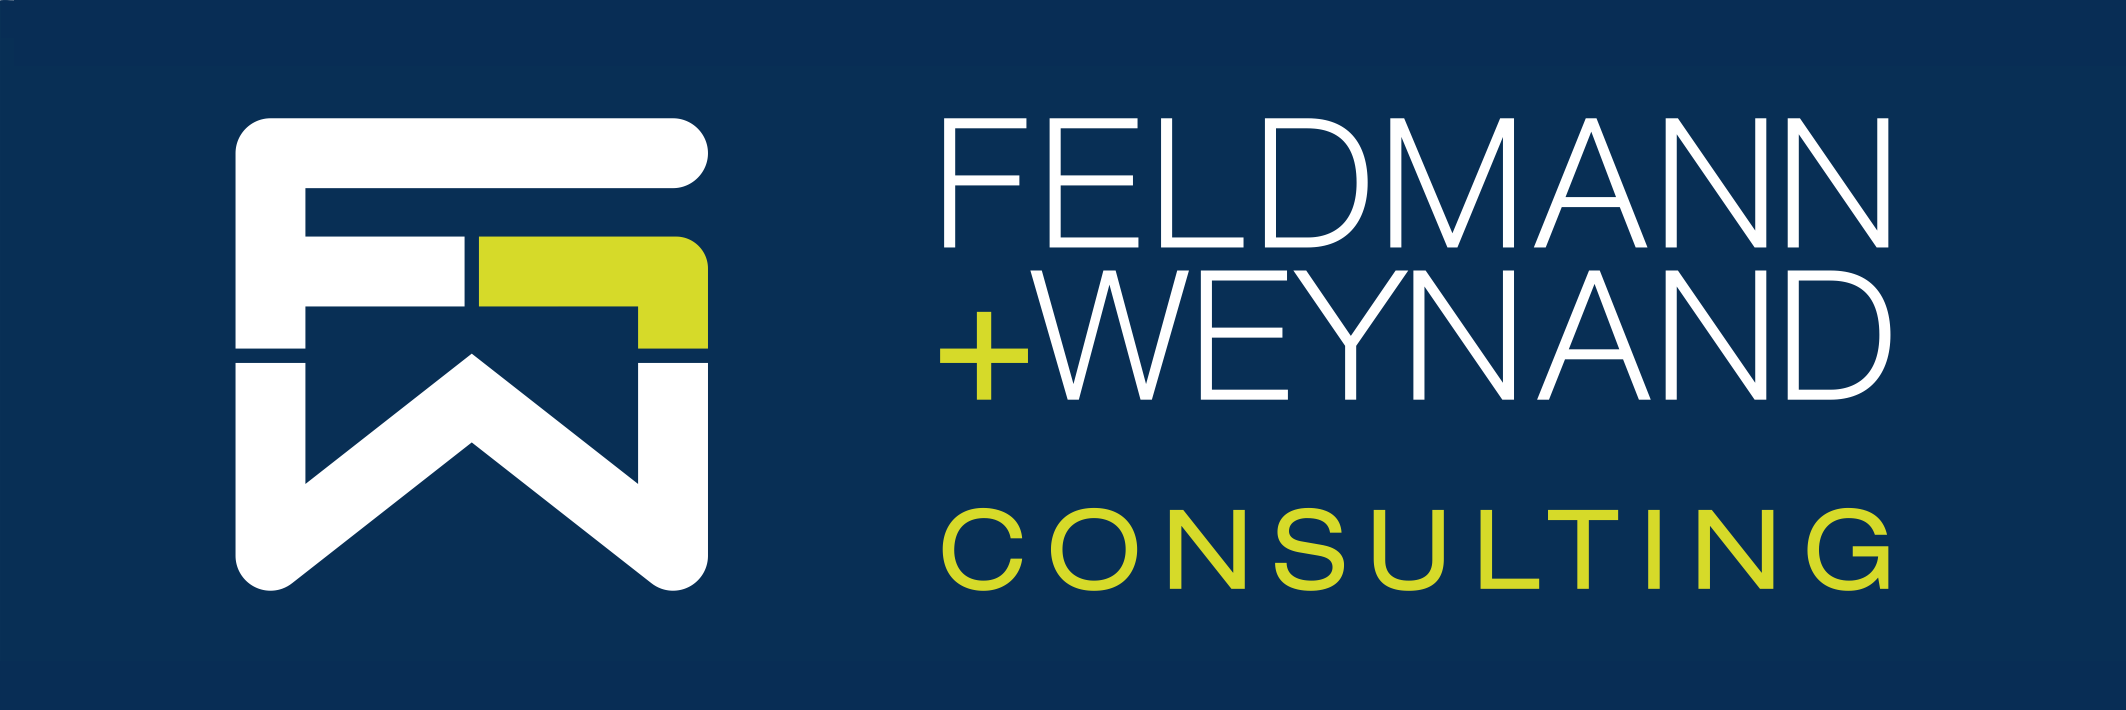 Feldmann + Weynand Consulting GmbH & Co. KG